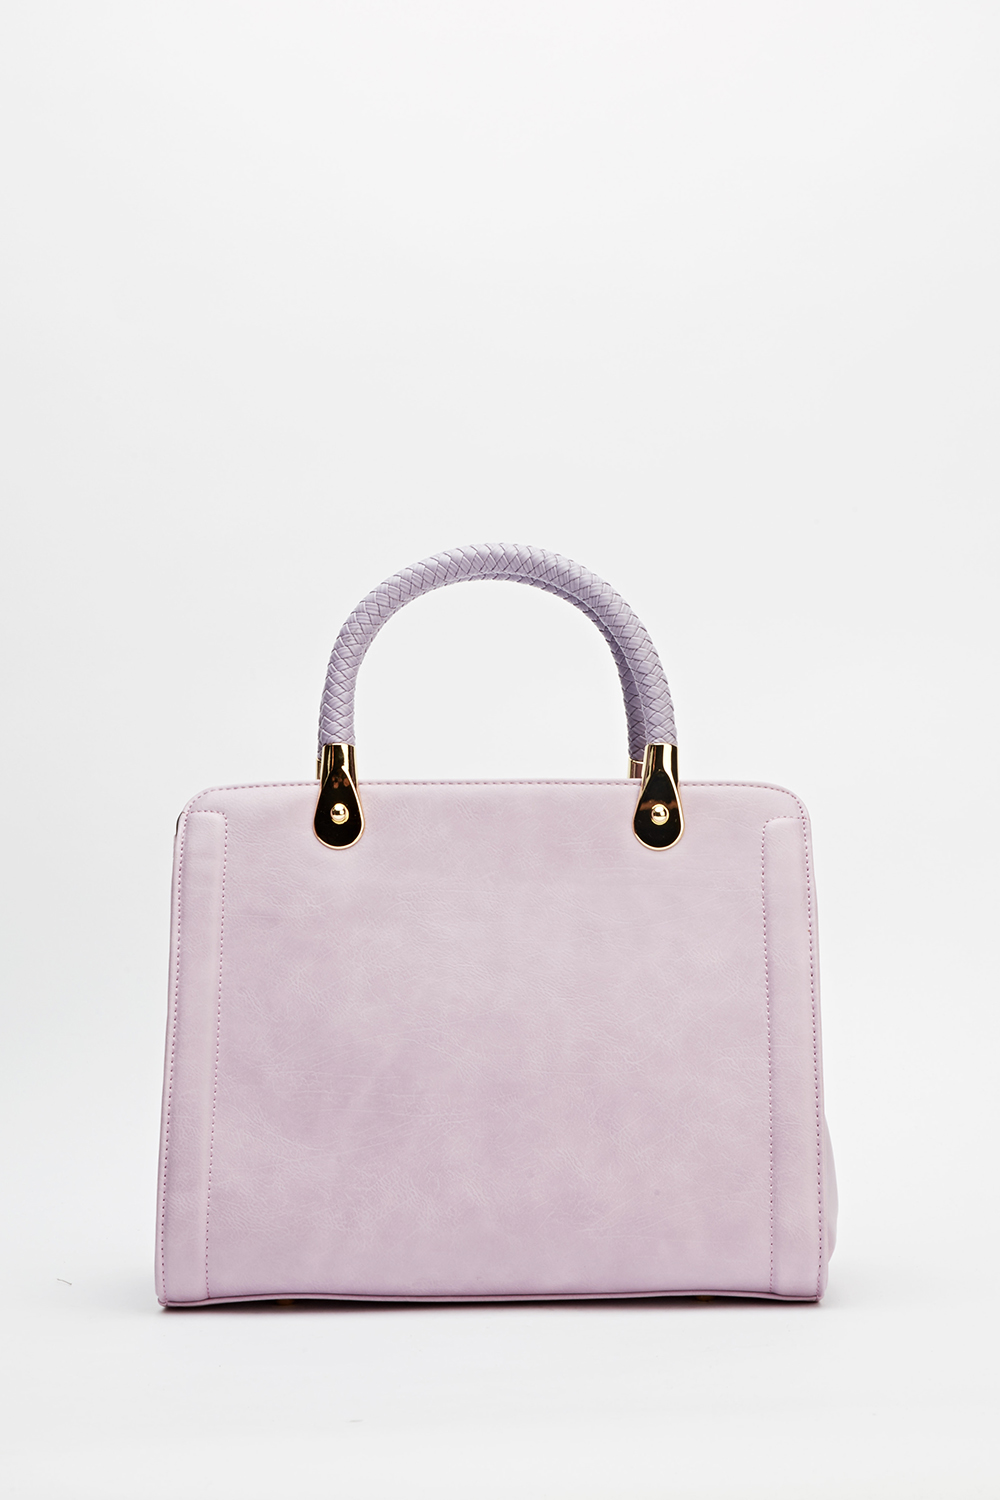 Front Embellished Detailed Handbag - Just $7